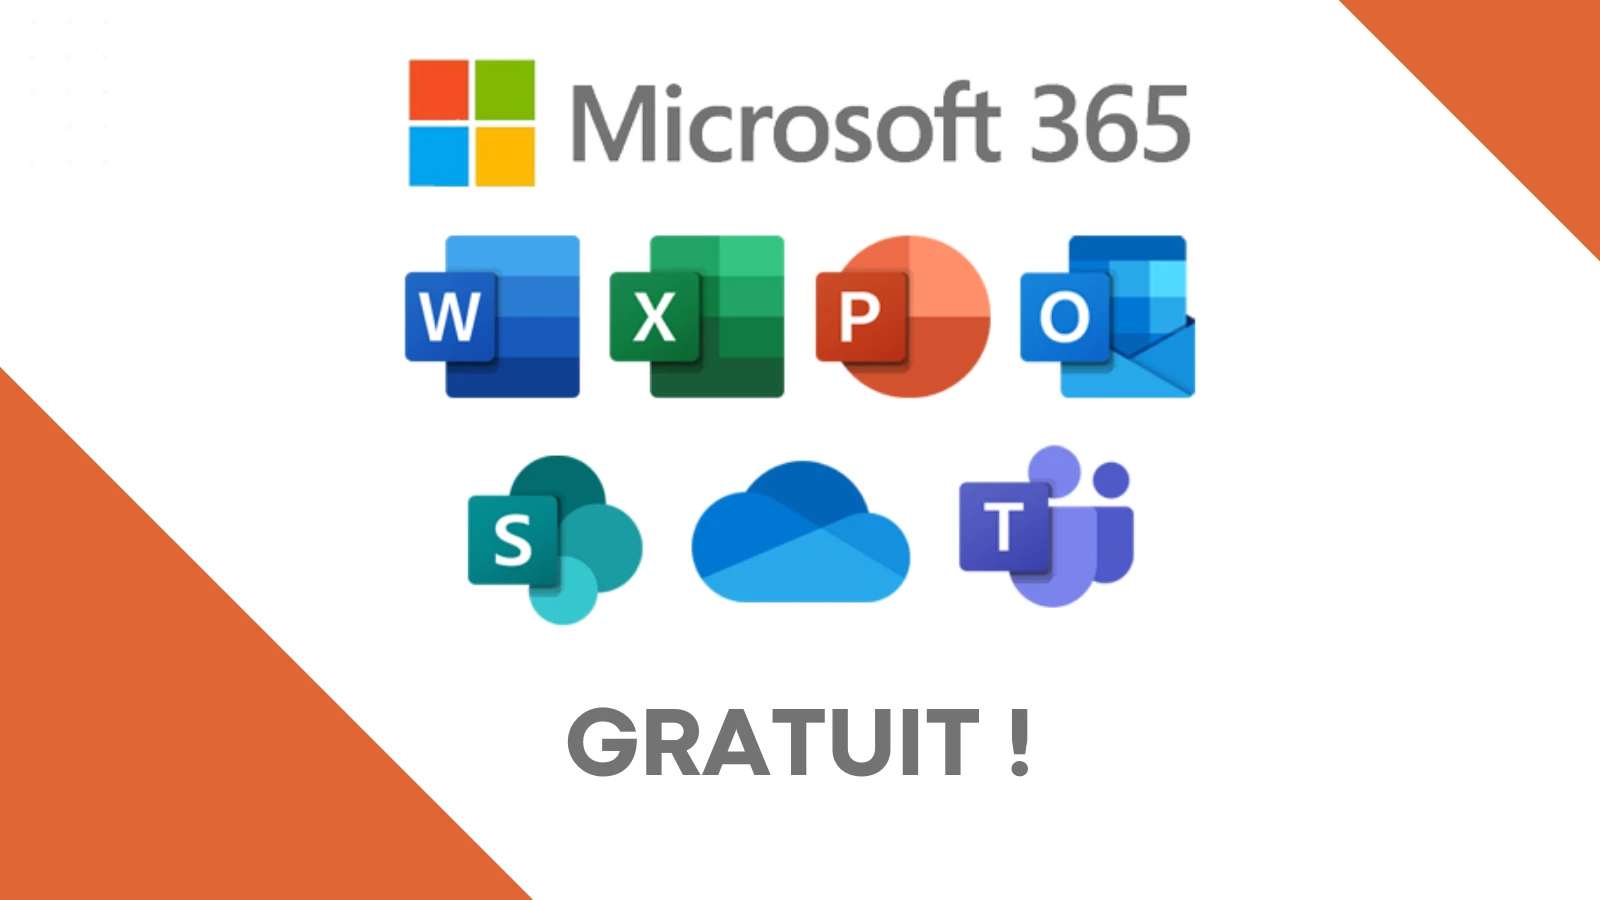 Microsoft 365 gratuit, c'est possible !